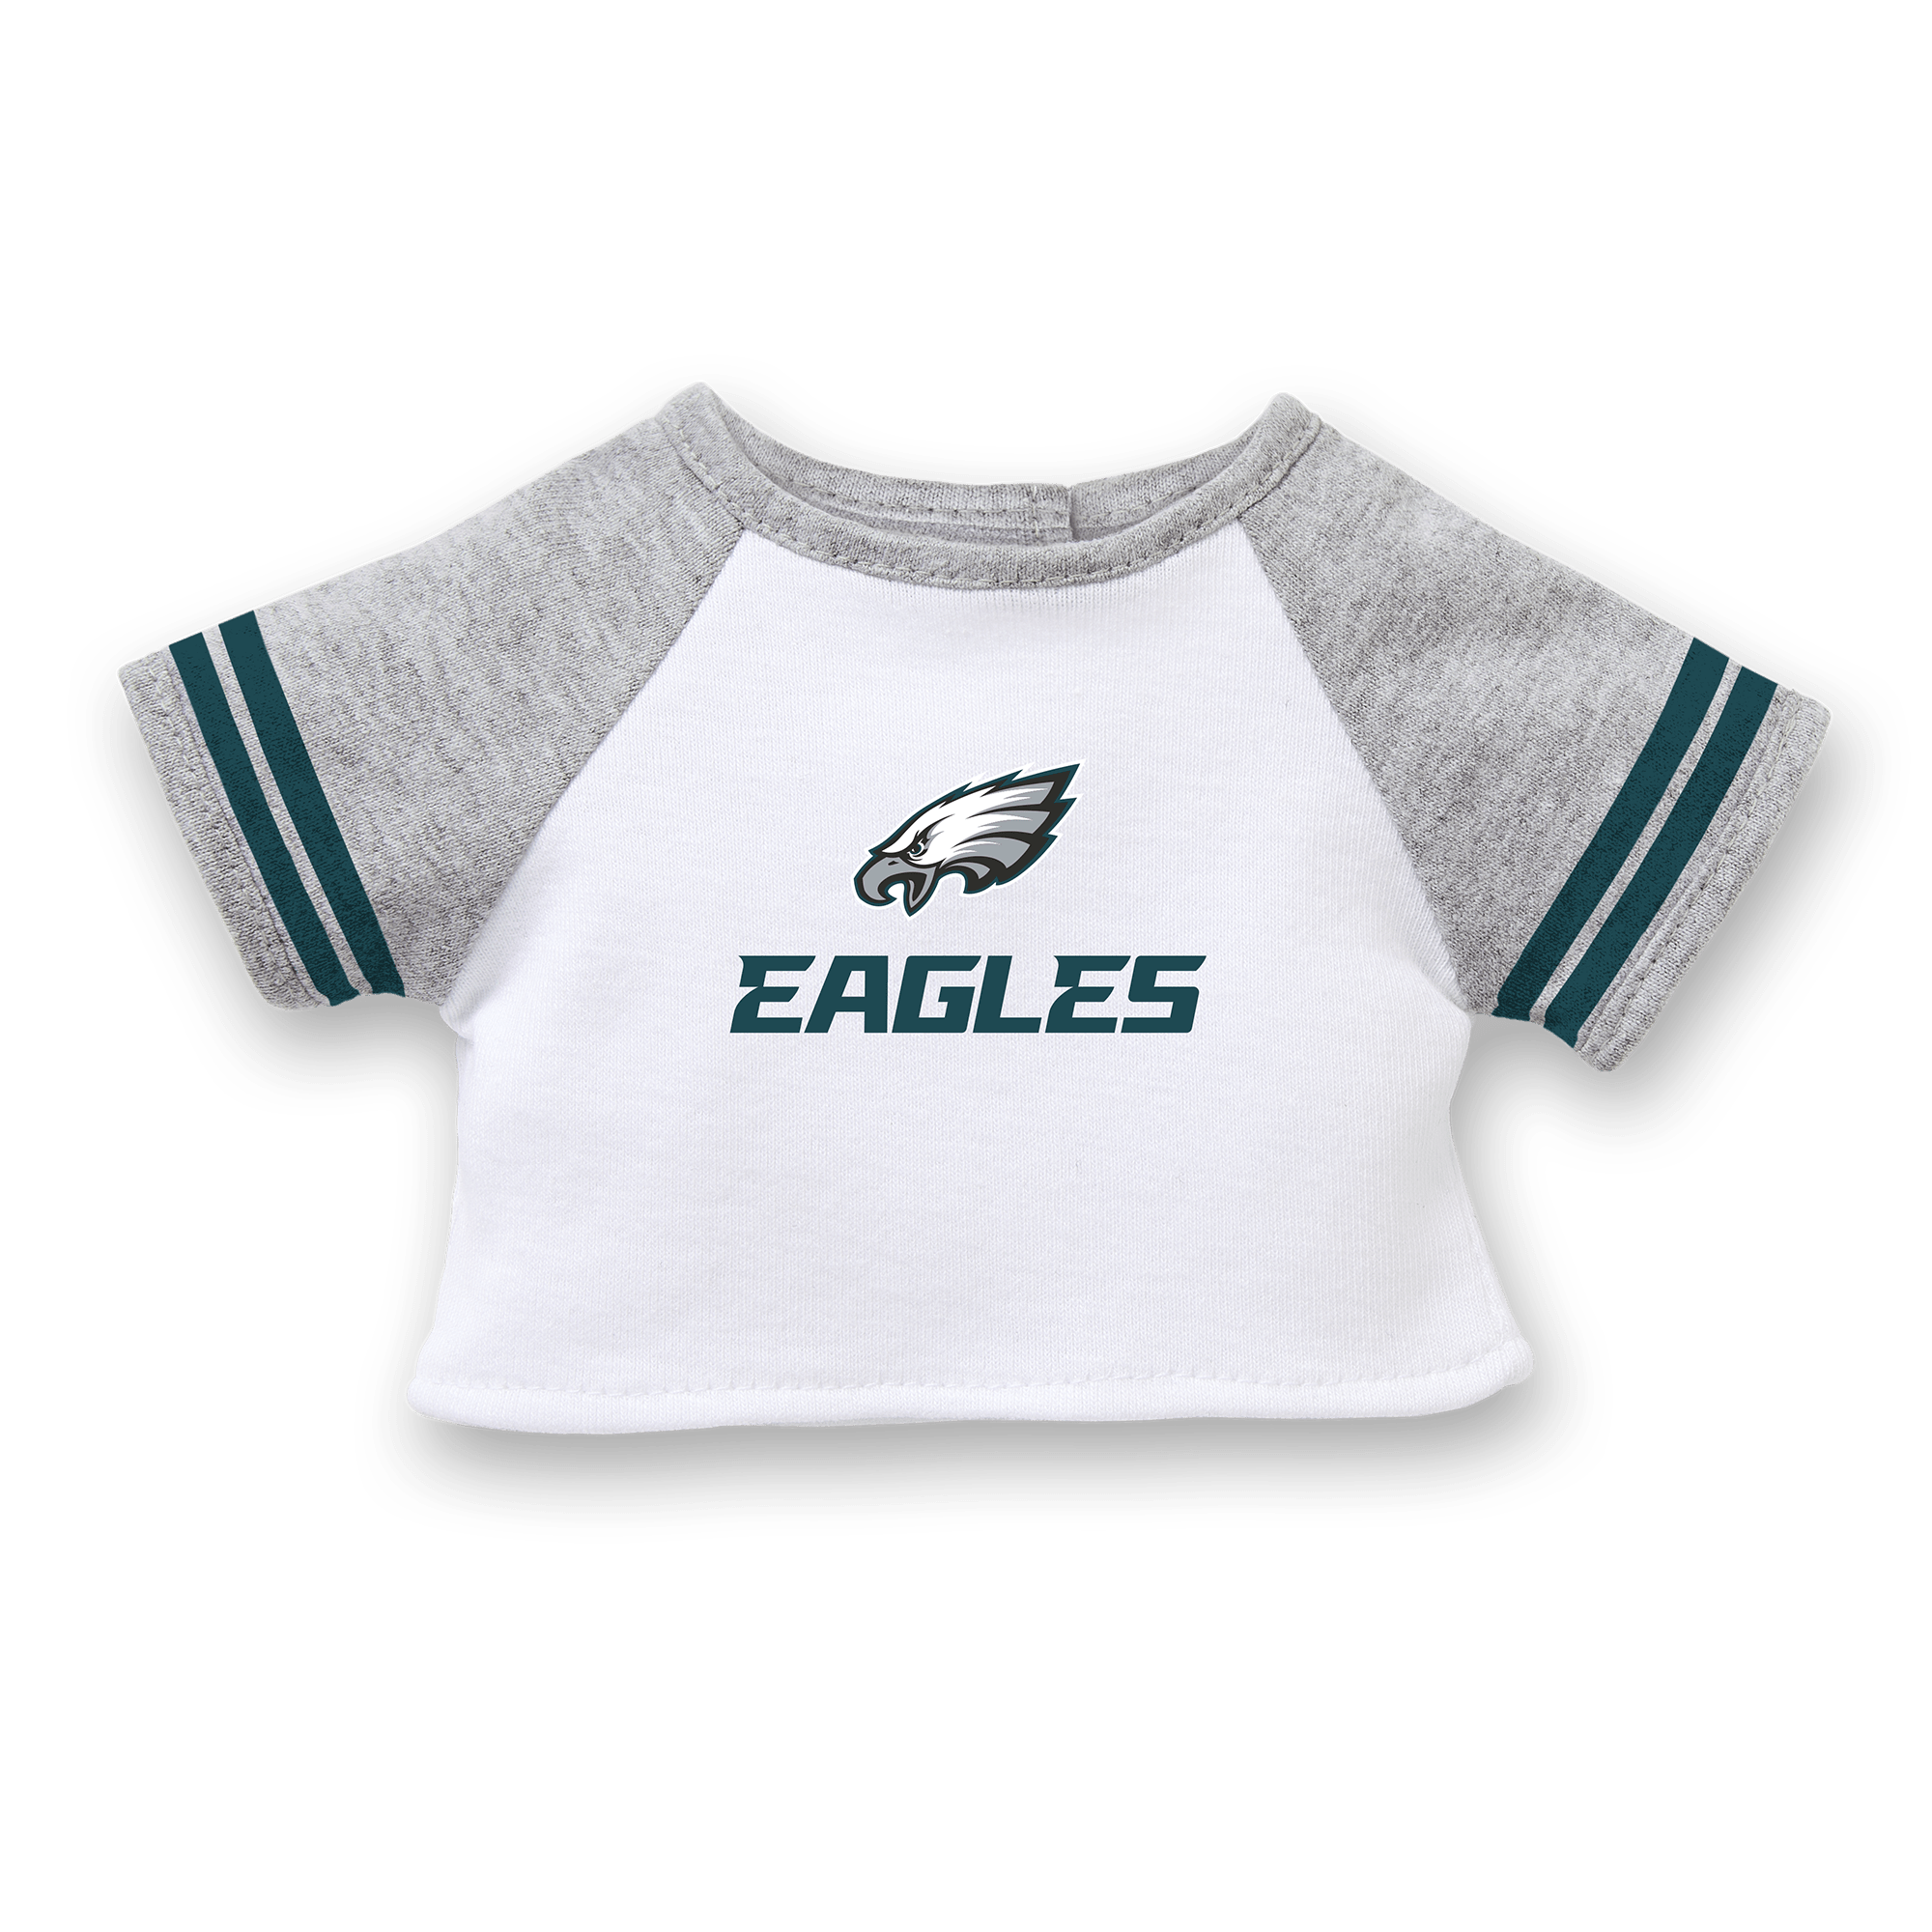 Philadelphia Eagles America Flag NFL Baseball Jersey Shirt in 2023